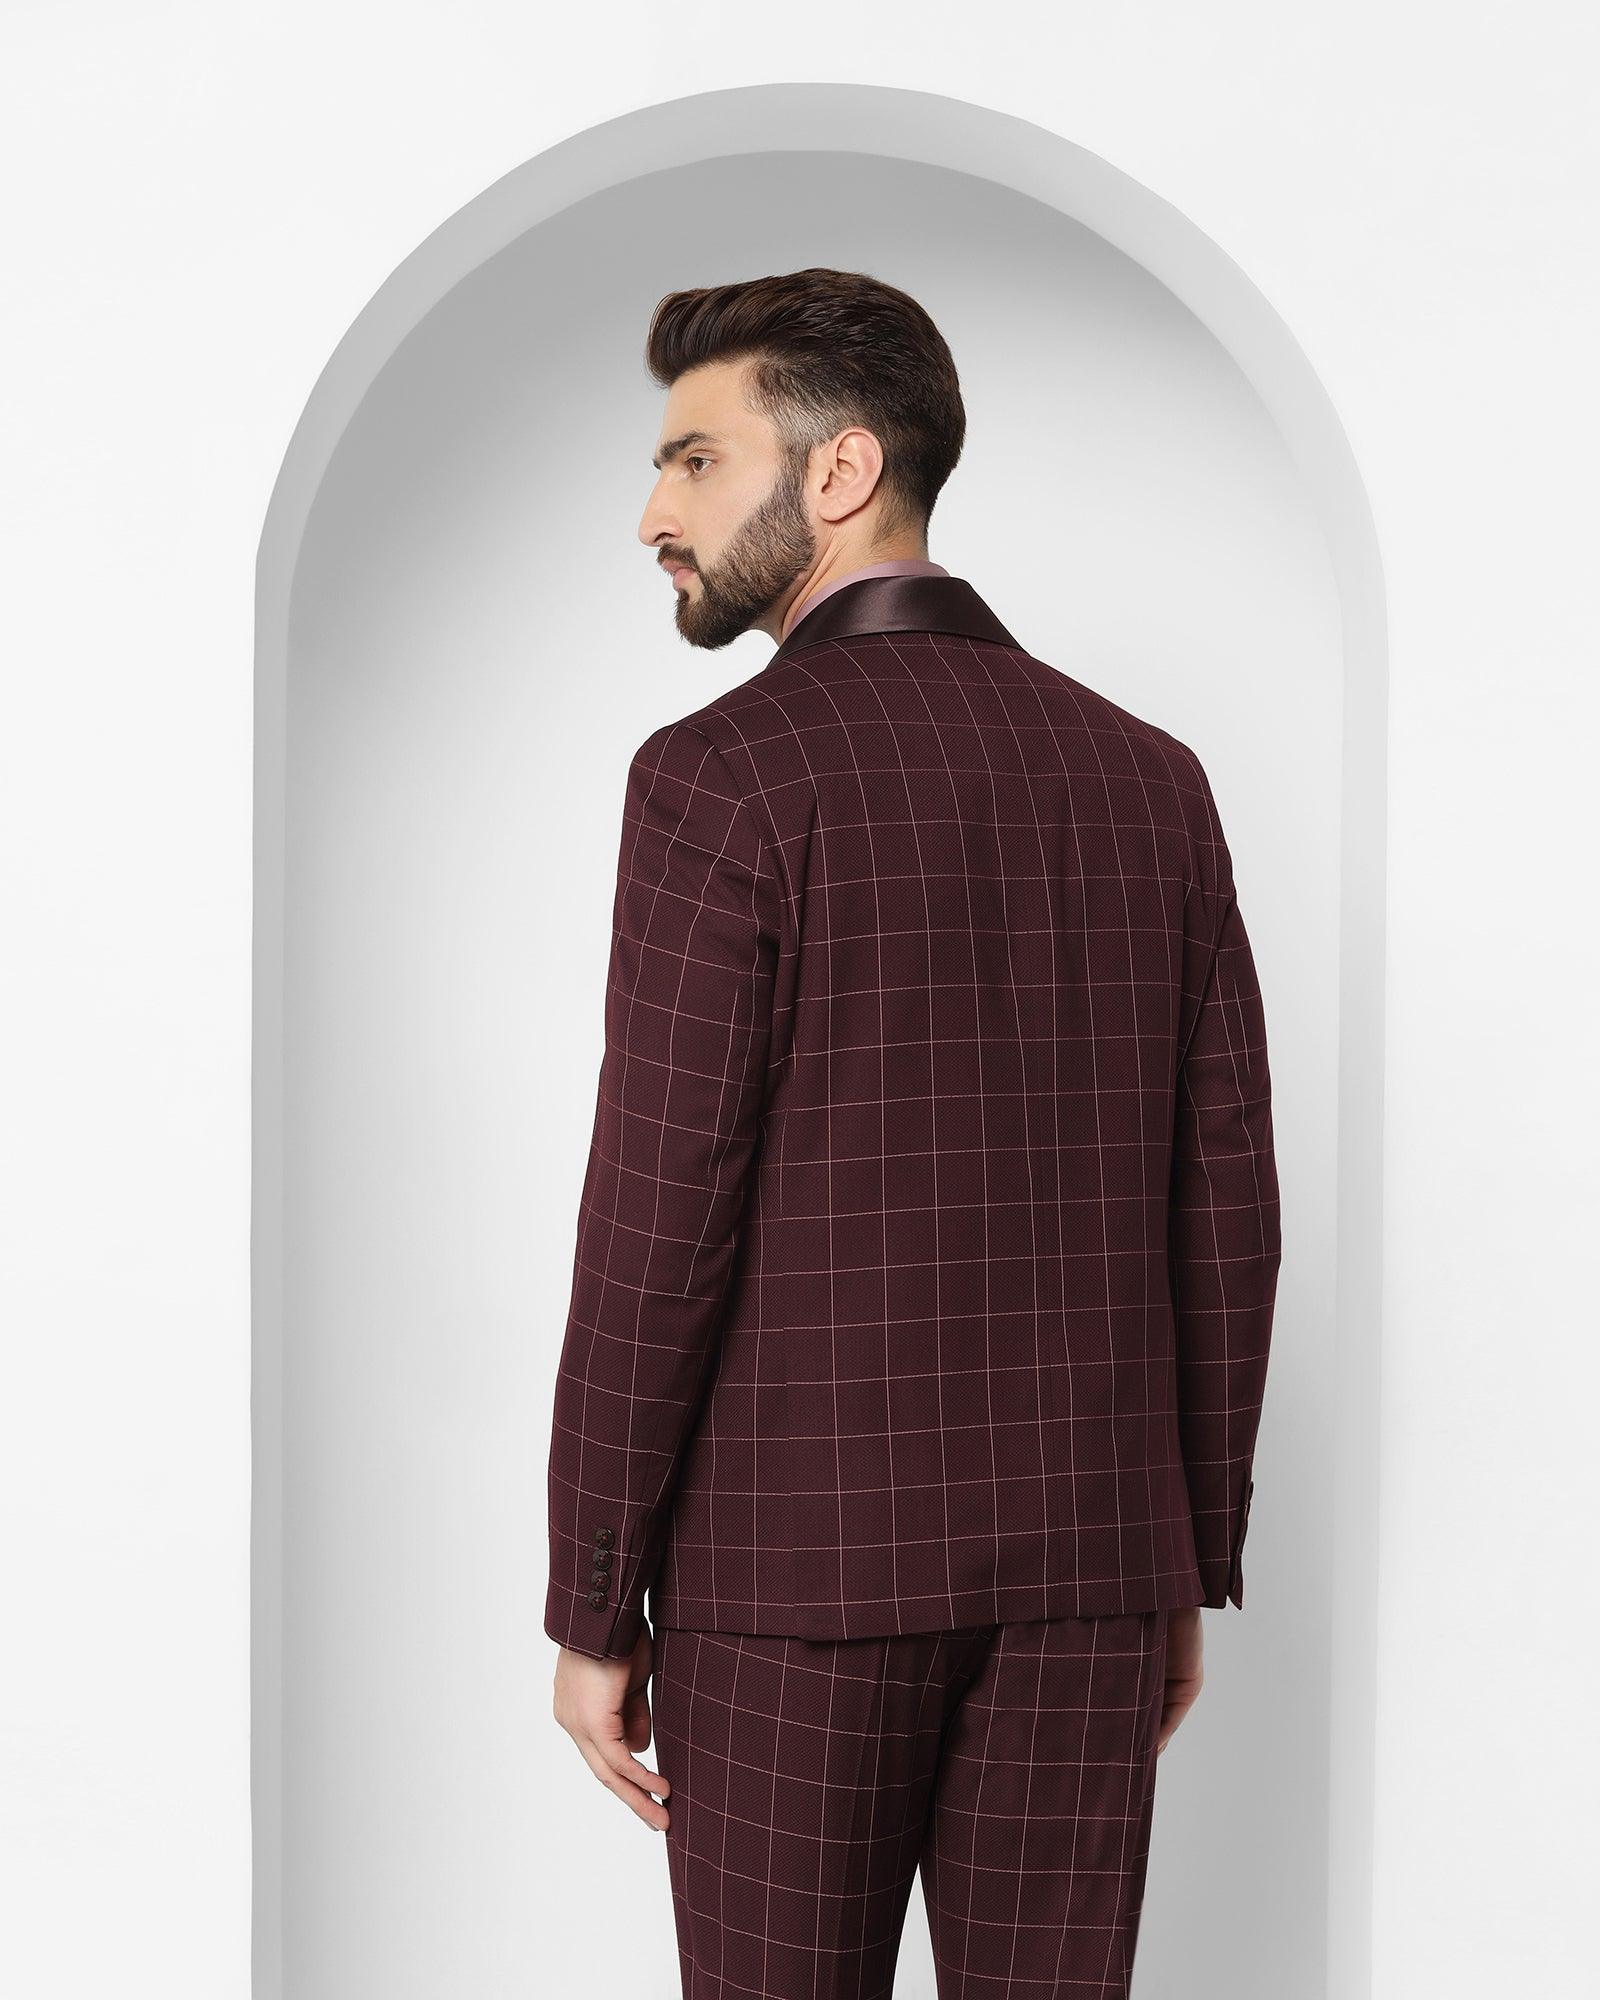 Details more than 182 blackberry coat suit latest